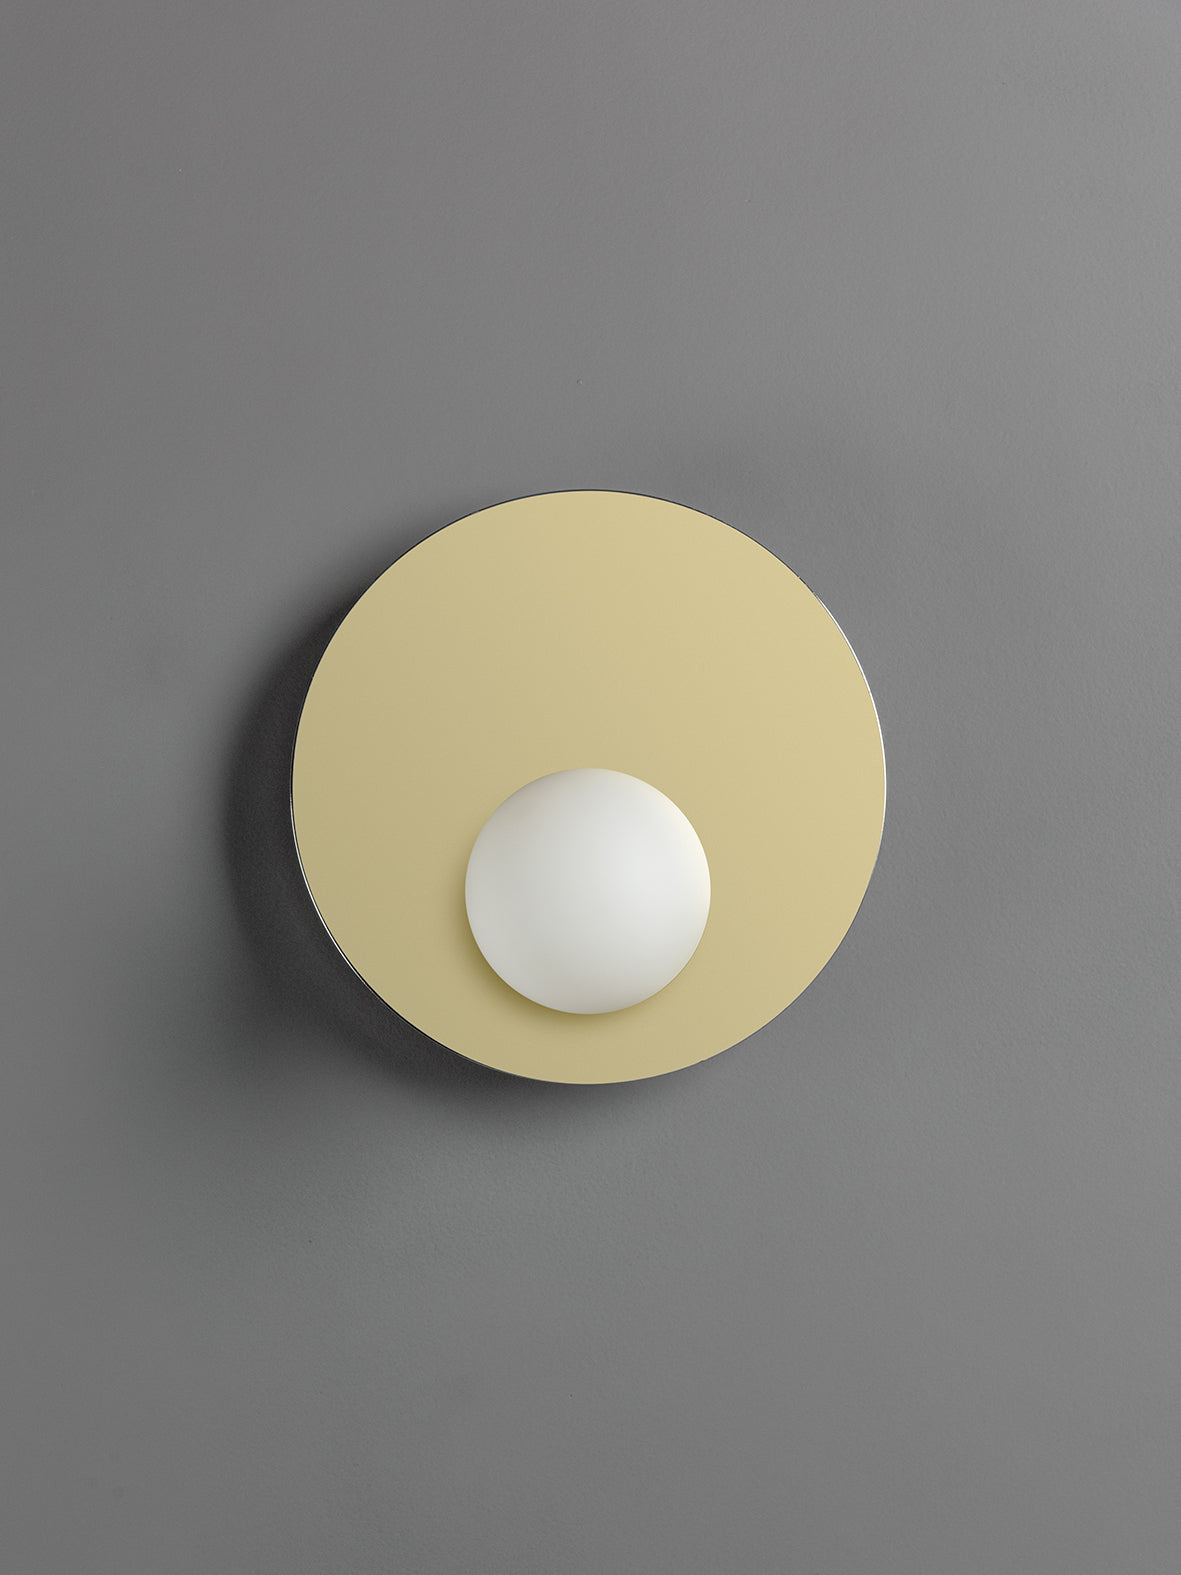 Luna - 1 light brass and opal wall light | Wall Light | Lights & Lamps Inc | Modern Affordable Designer Lighting | USA